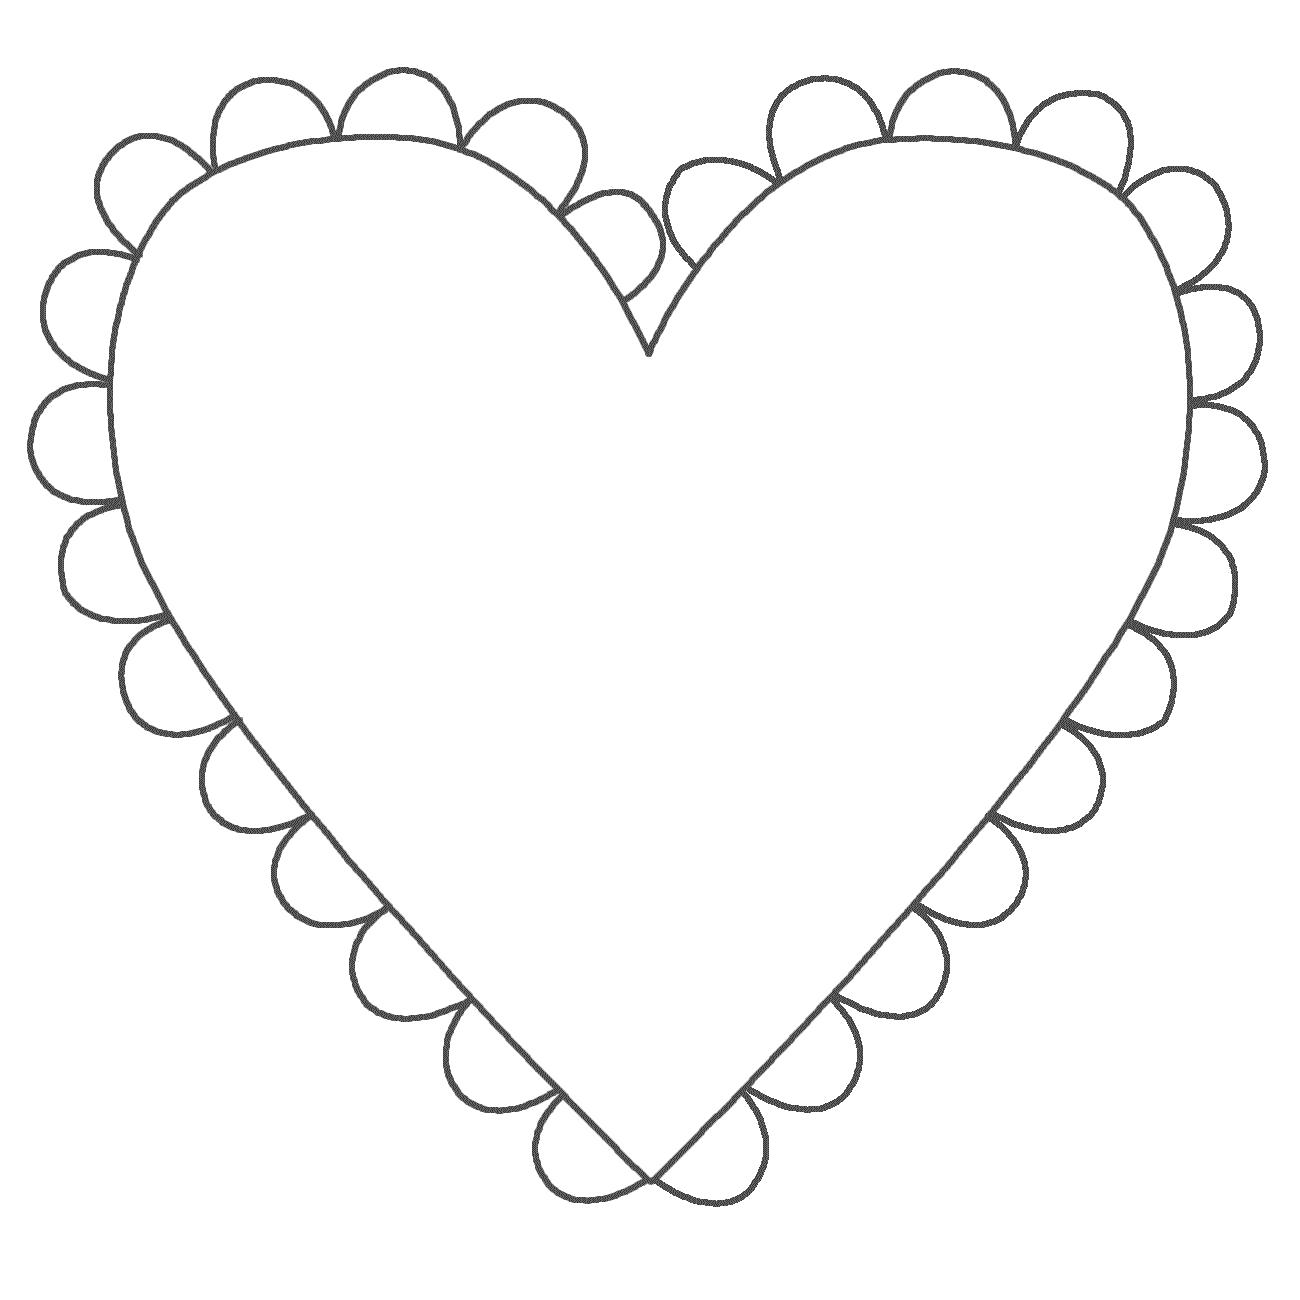 Раскраска Раскраски шаблоны сердечек для вырезания  сердечко с кружевом для вырезки из бумаги, для творчества детей. сердечко